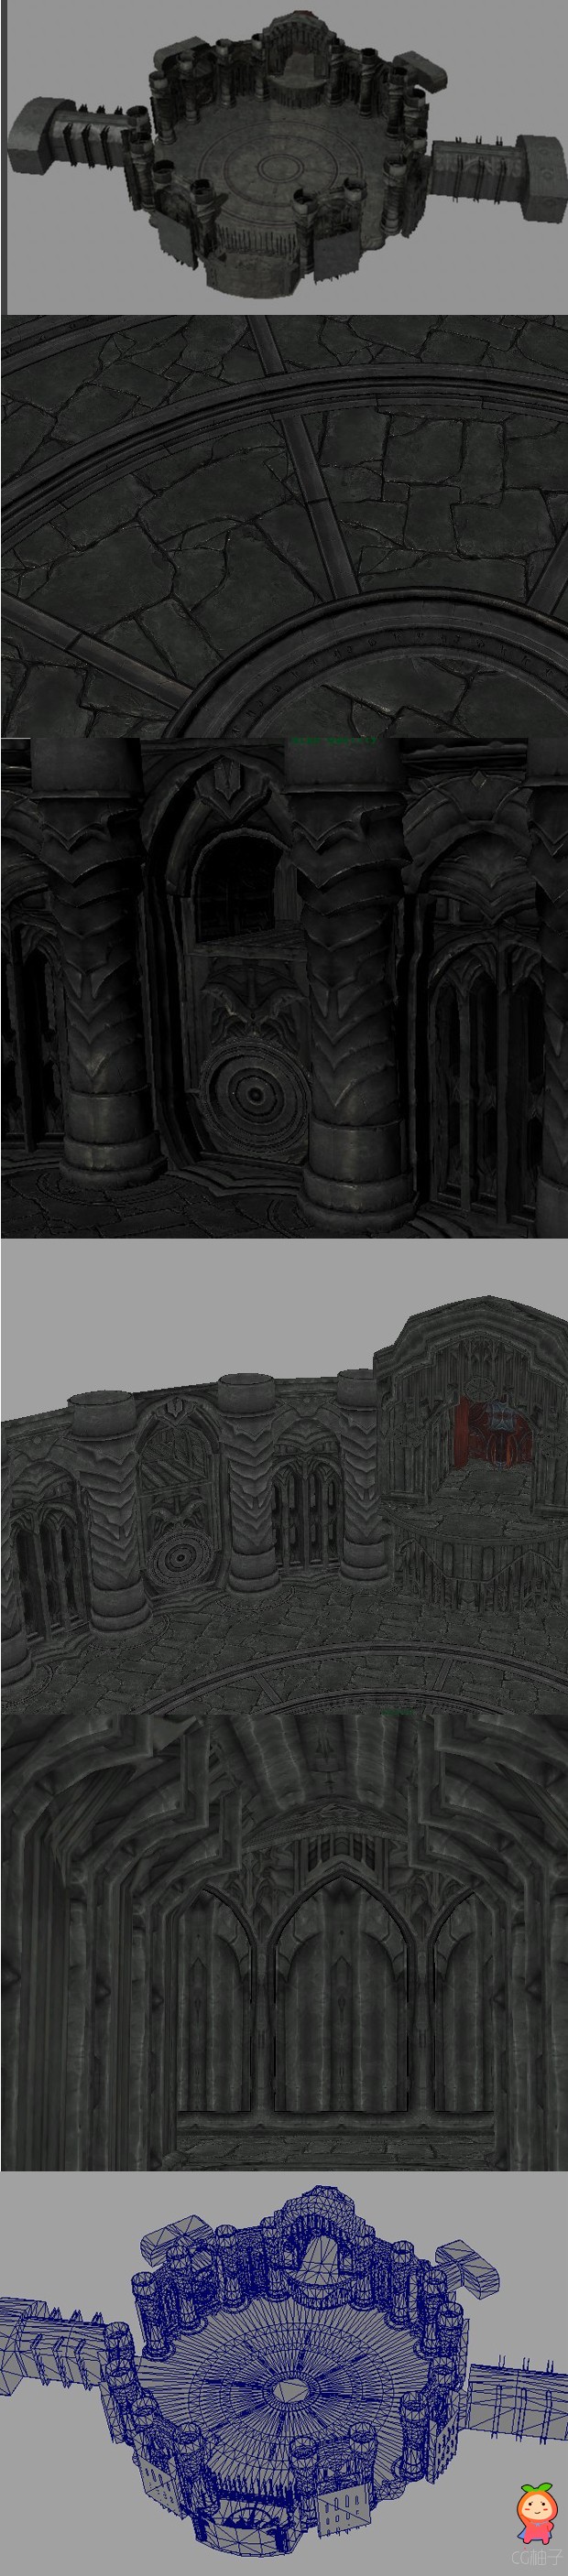 《暗黑血统》地下场景3D模型 挑战决斗3D地下场景3D建筑模型